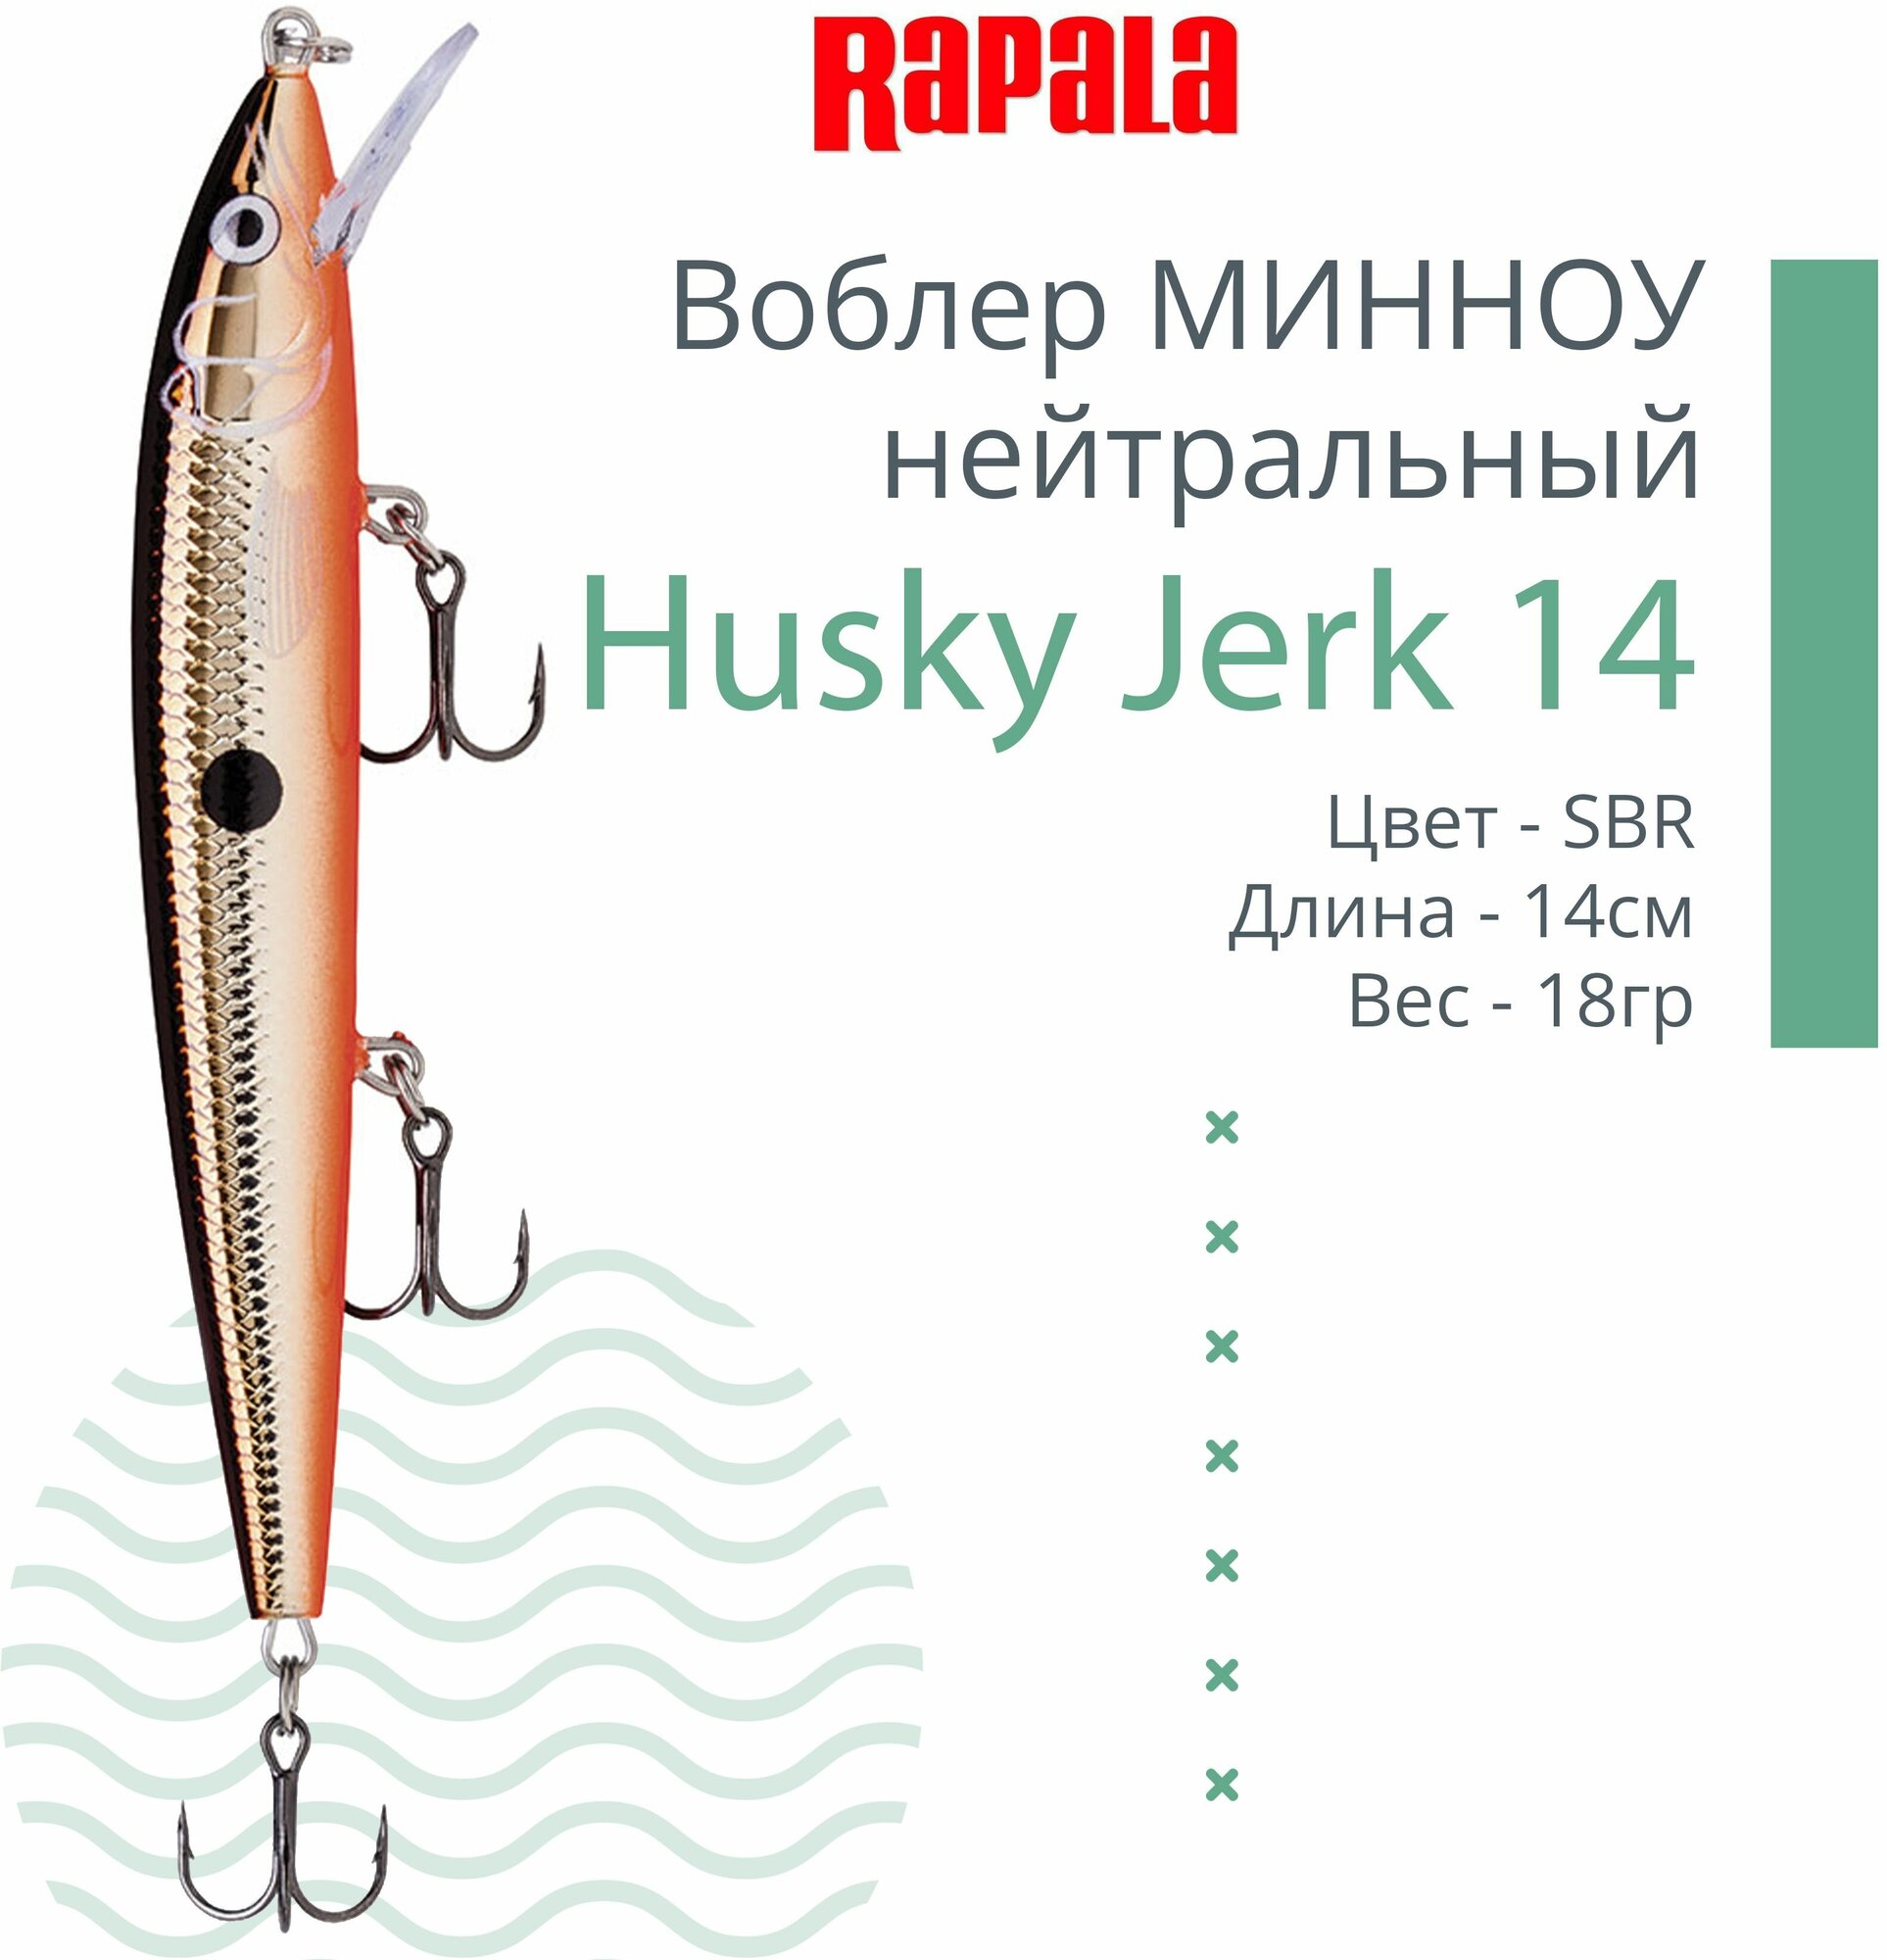 Воблер для рыбалки RAPALA Husky Jerk 14, 14см, 18гр, цвет SBR, нейтральный